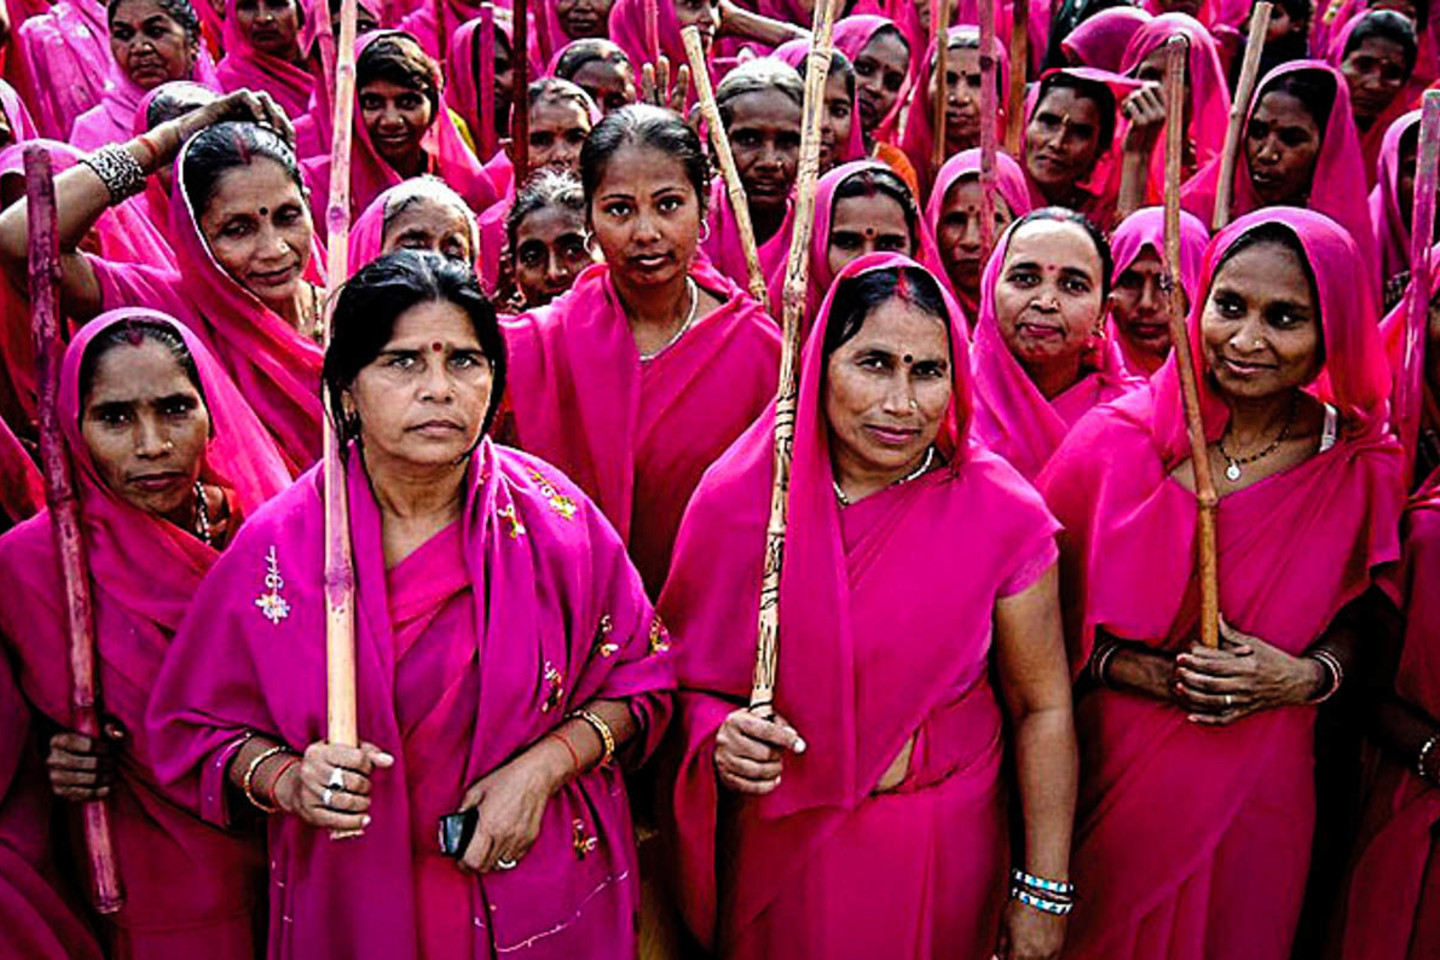  Į rožinės spalvos sarius įsisupusios aktyvistės Indijoje kovoja prieš moterų diskriminavimą ir smurtą šeimoje.